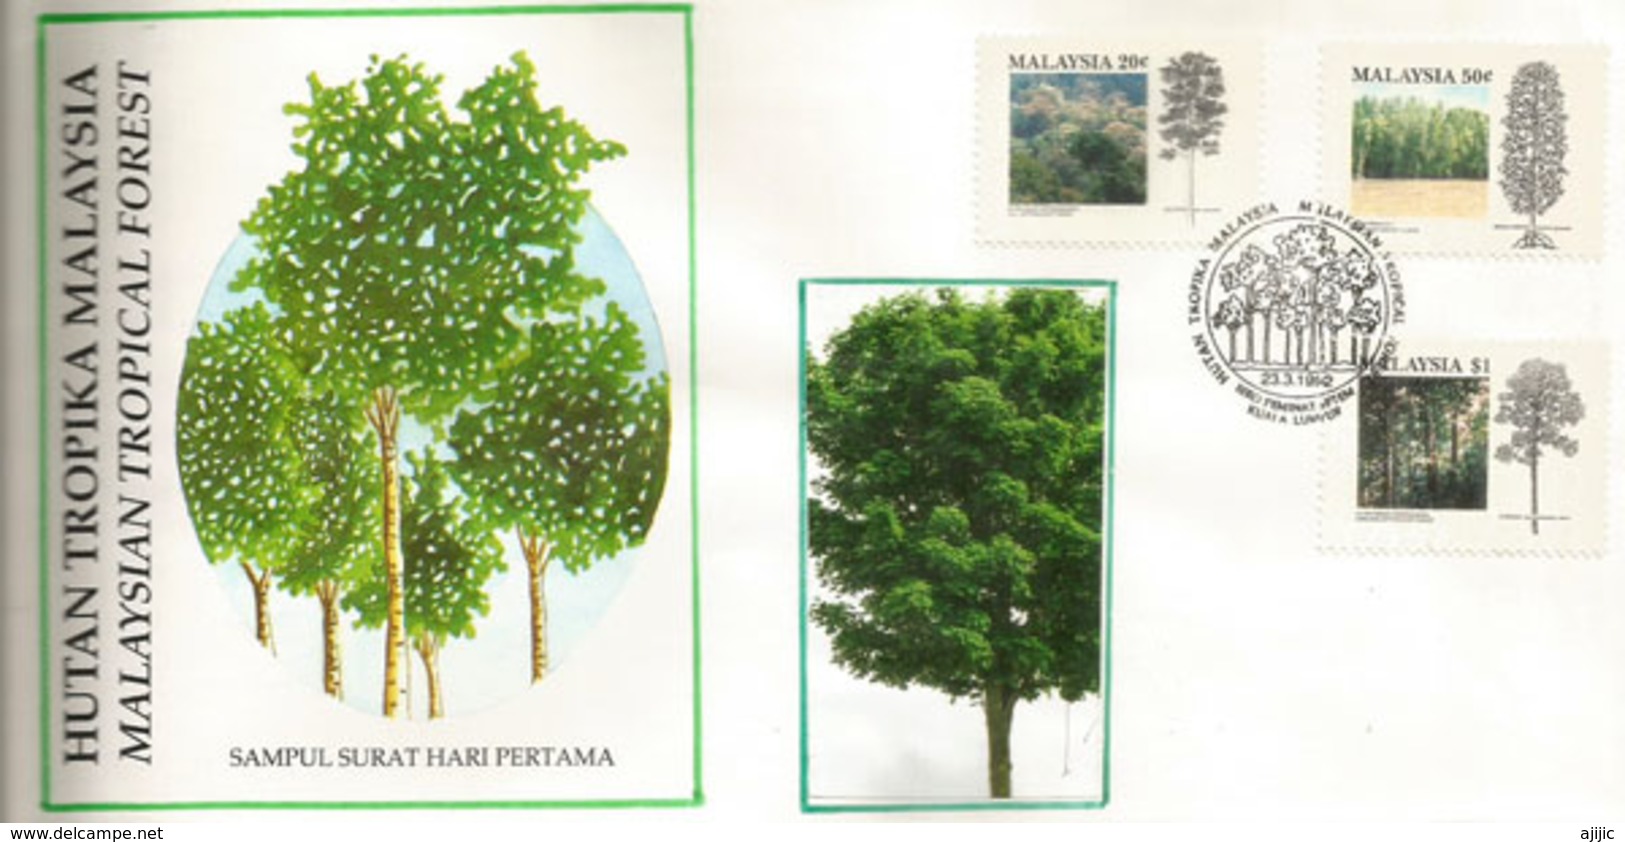 Les Arbres De Malaisie (Malaysia Tropical Forest),  FDC Malaisie 1992 - Árboles